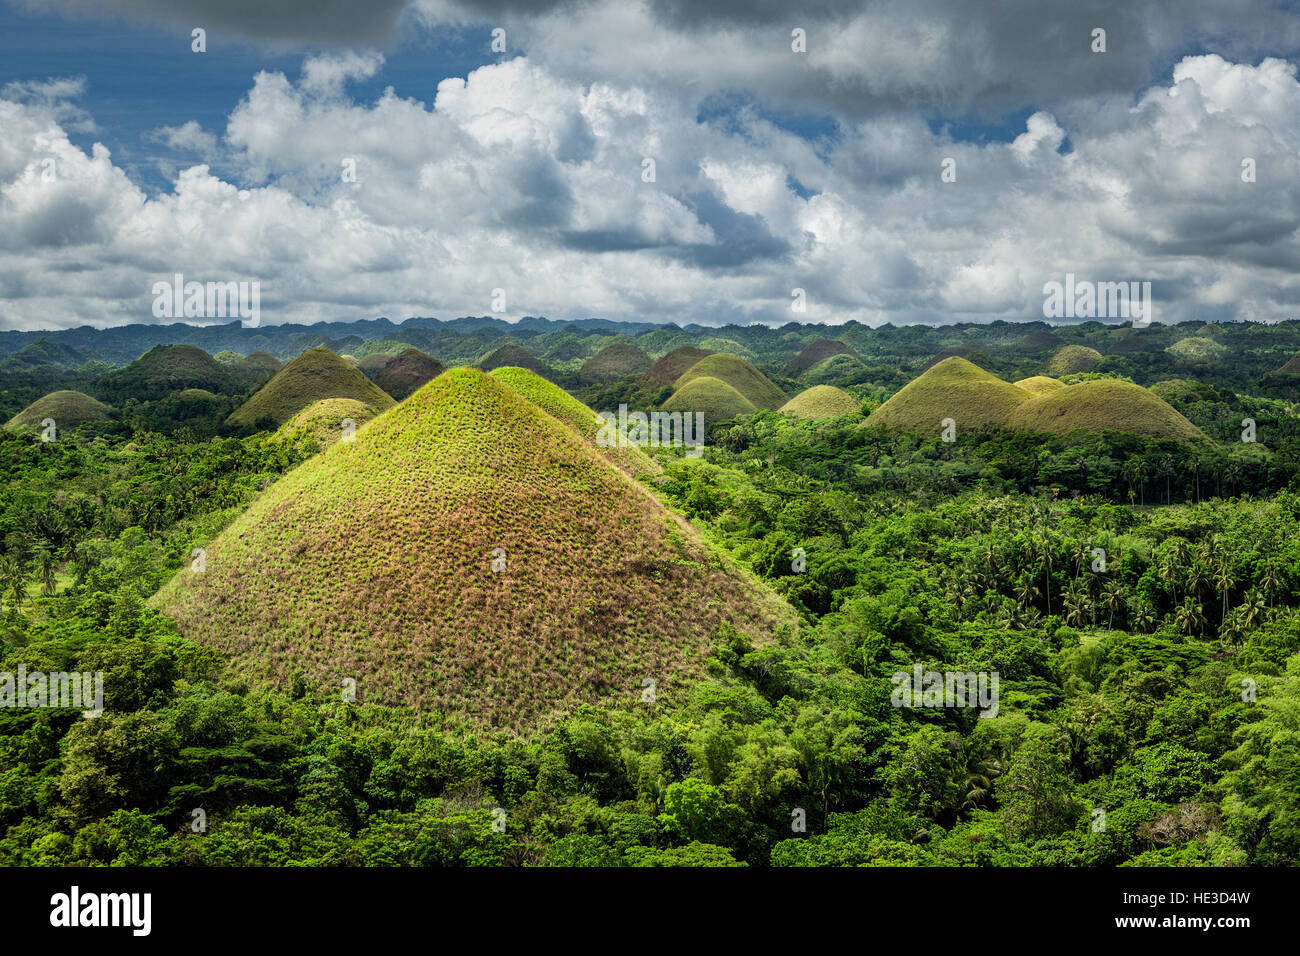 Colinas de Chocolate monumento geológico en la isla de Bohol, Filipinas. Foto de stock